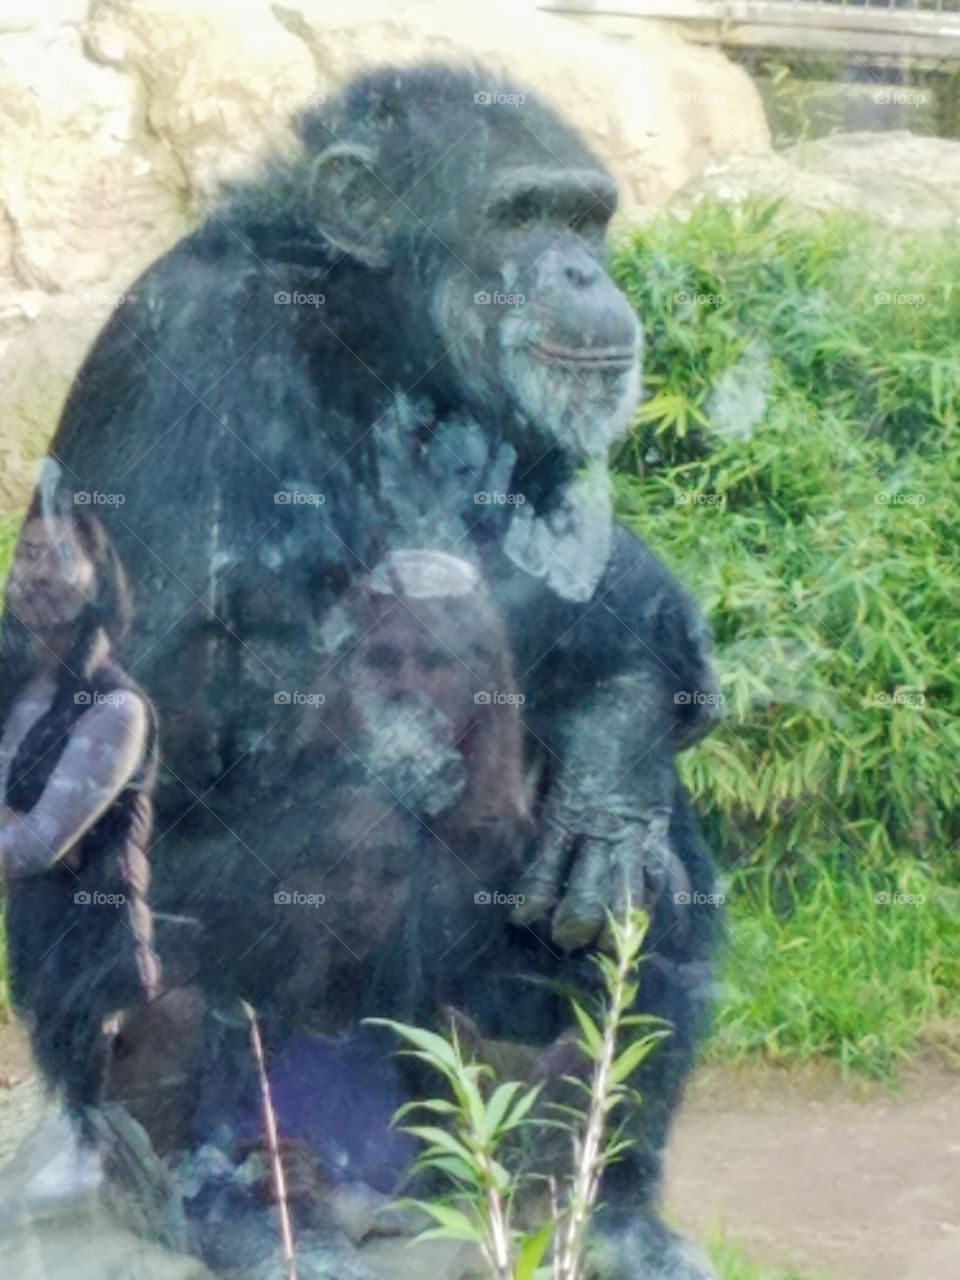 Chimpanzee art reflection